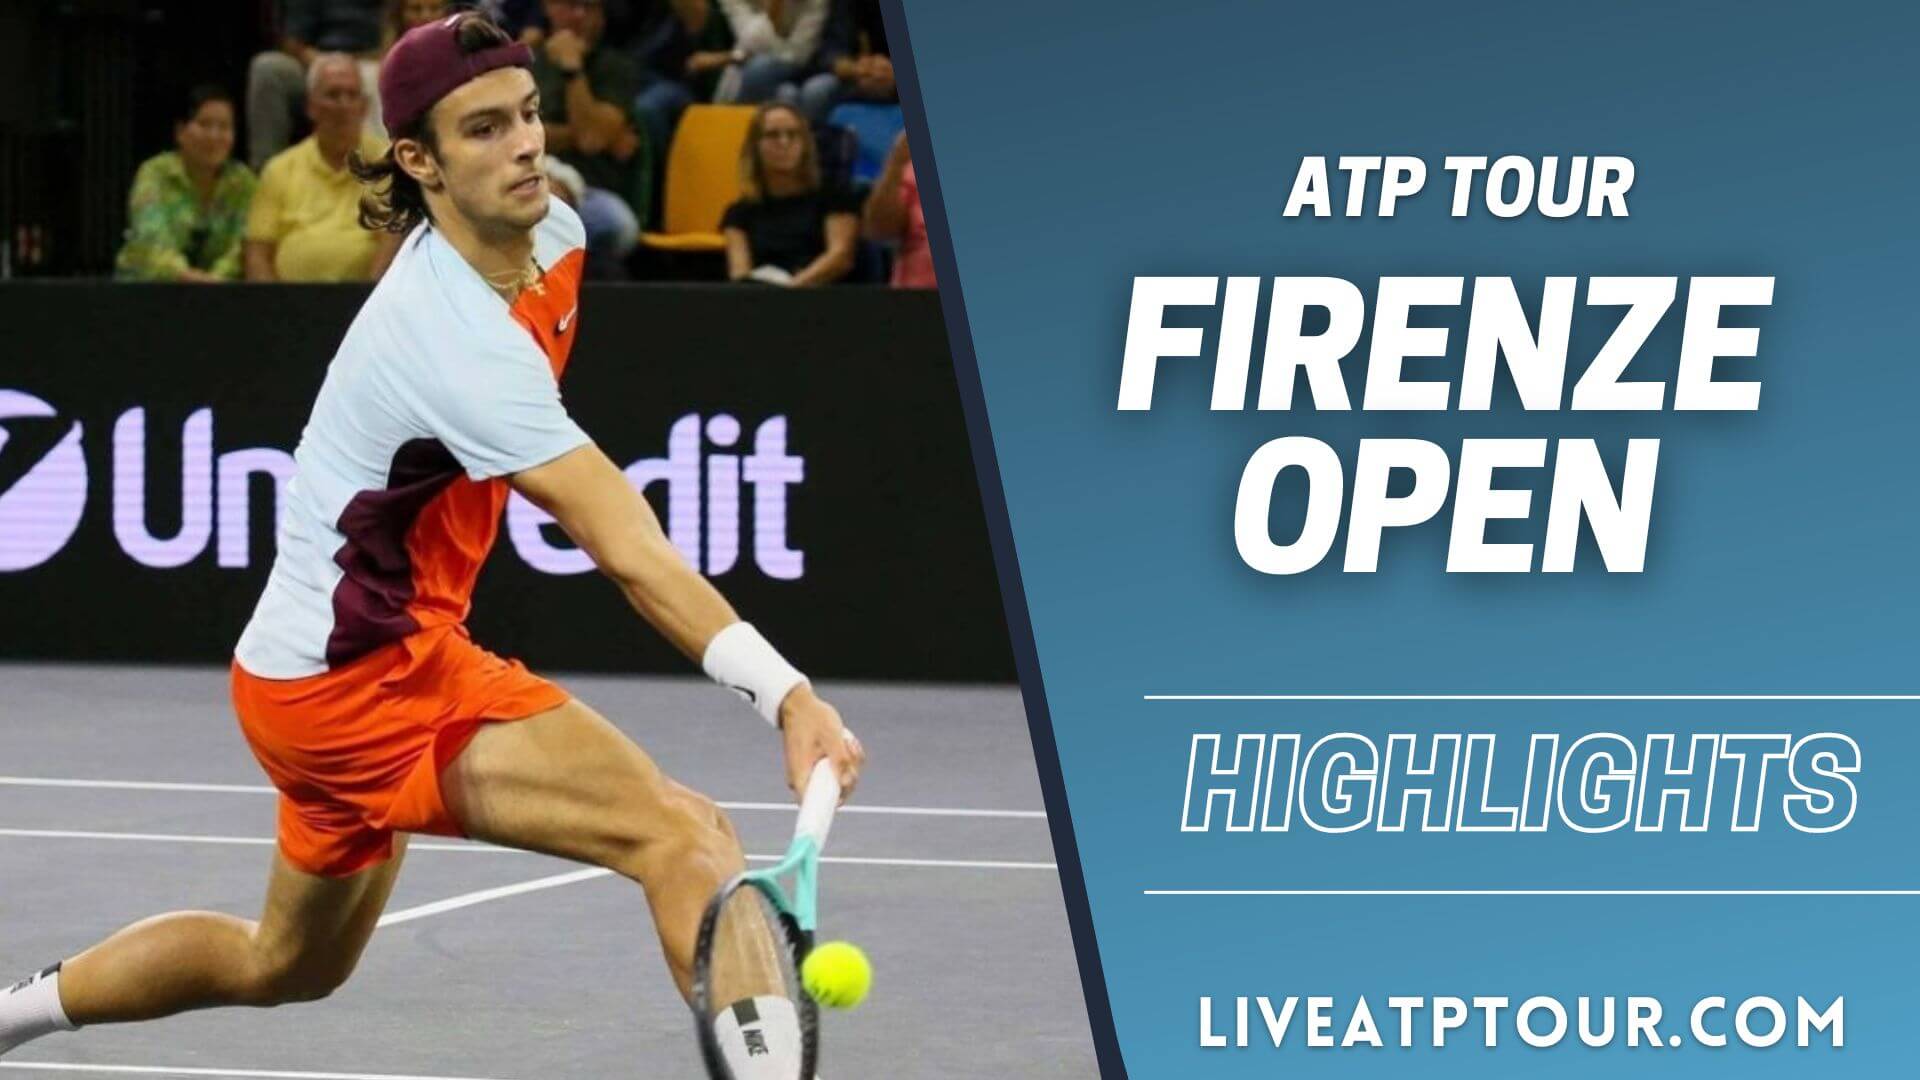 Firenze Open 2022 ATP Final Highlights